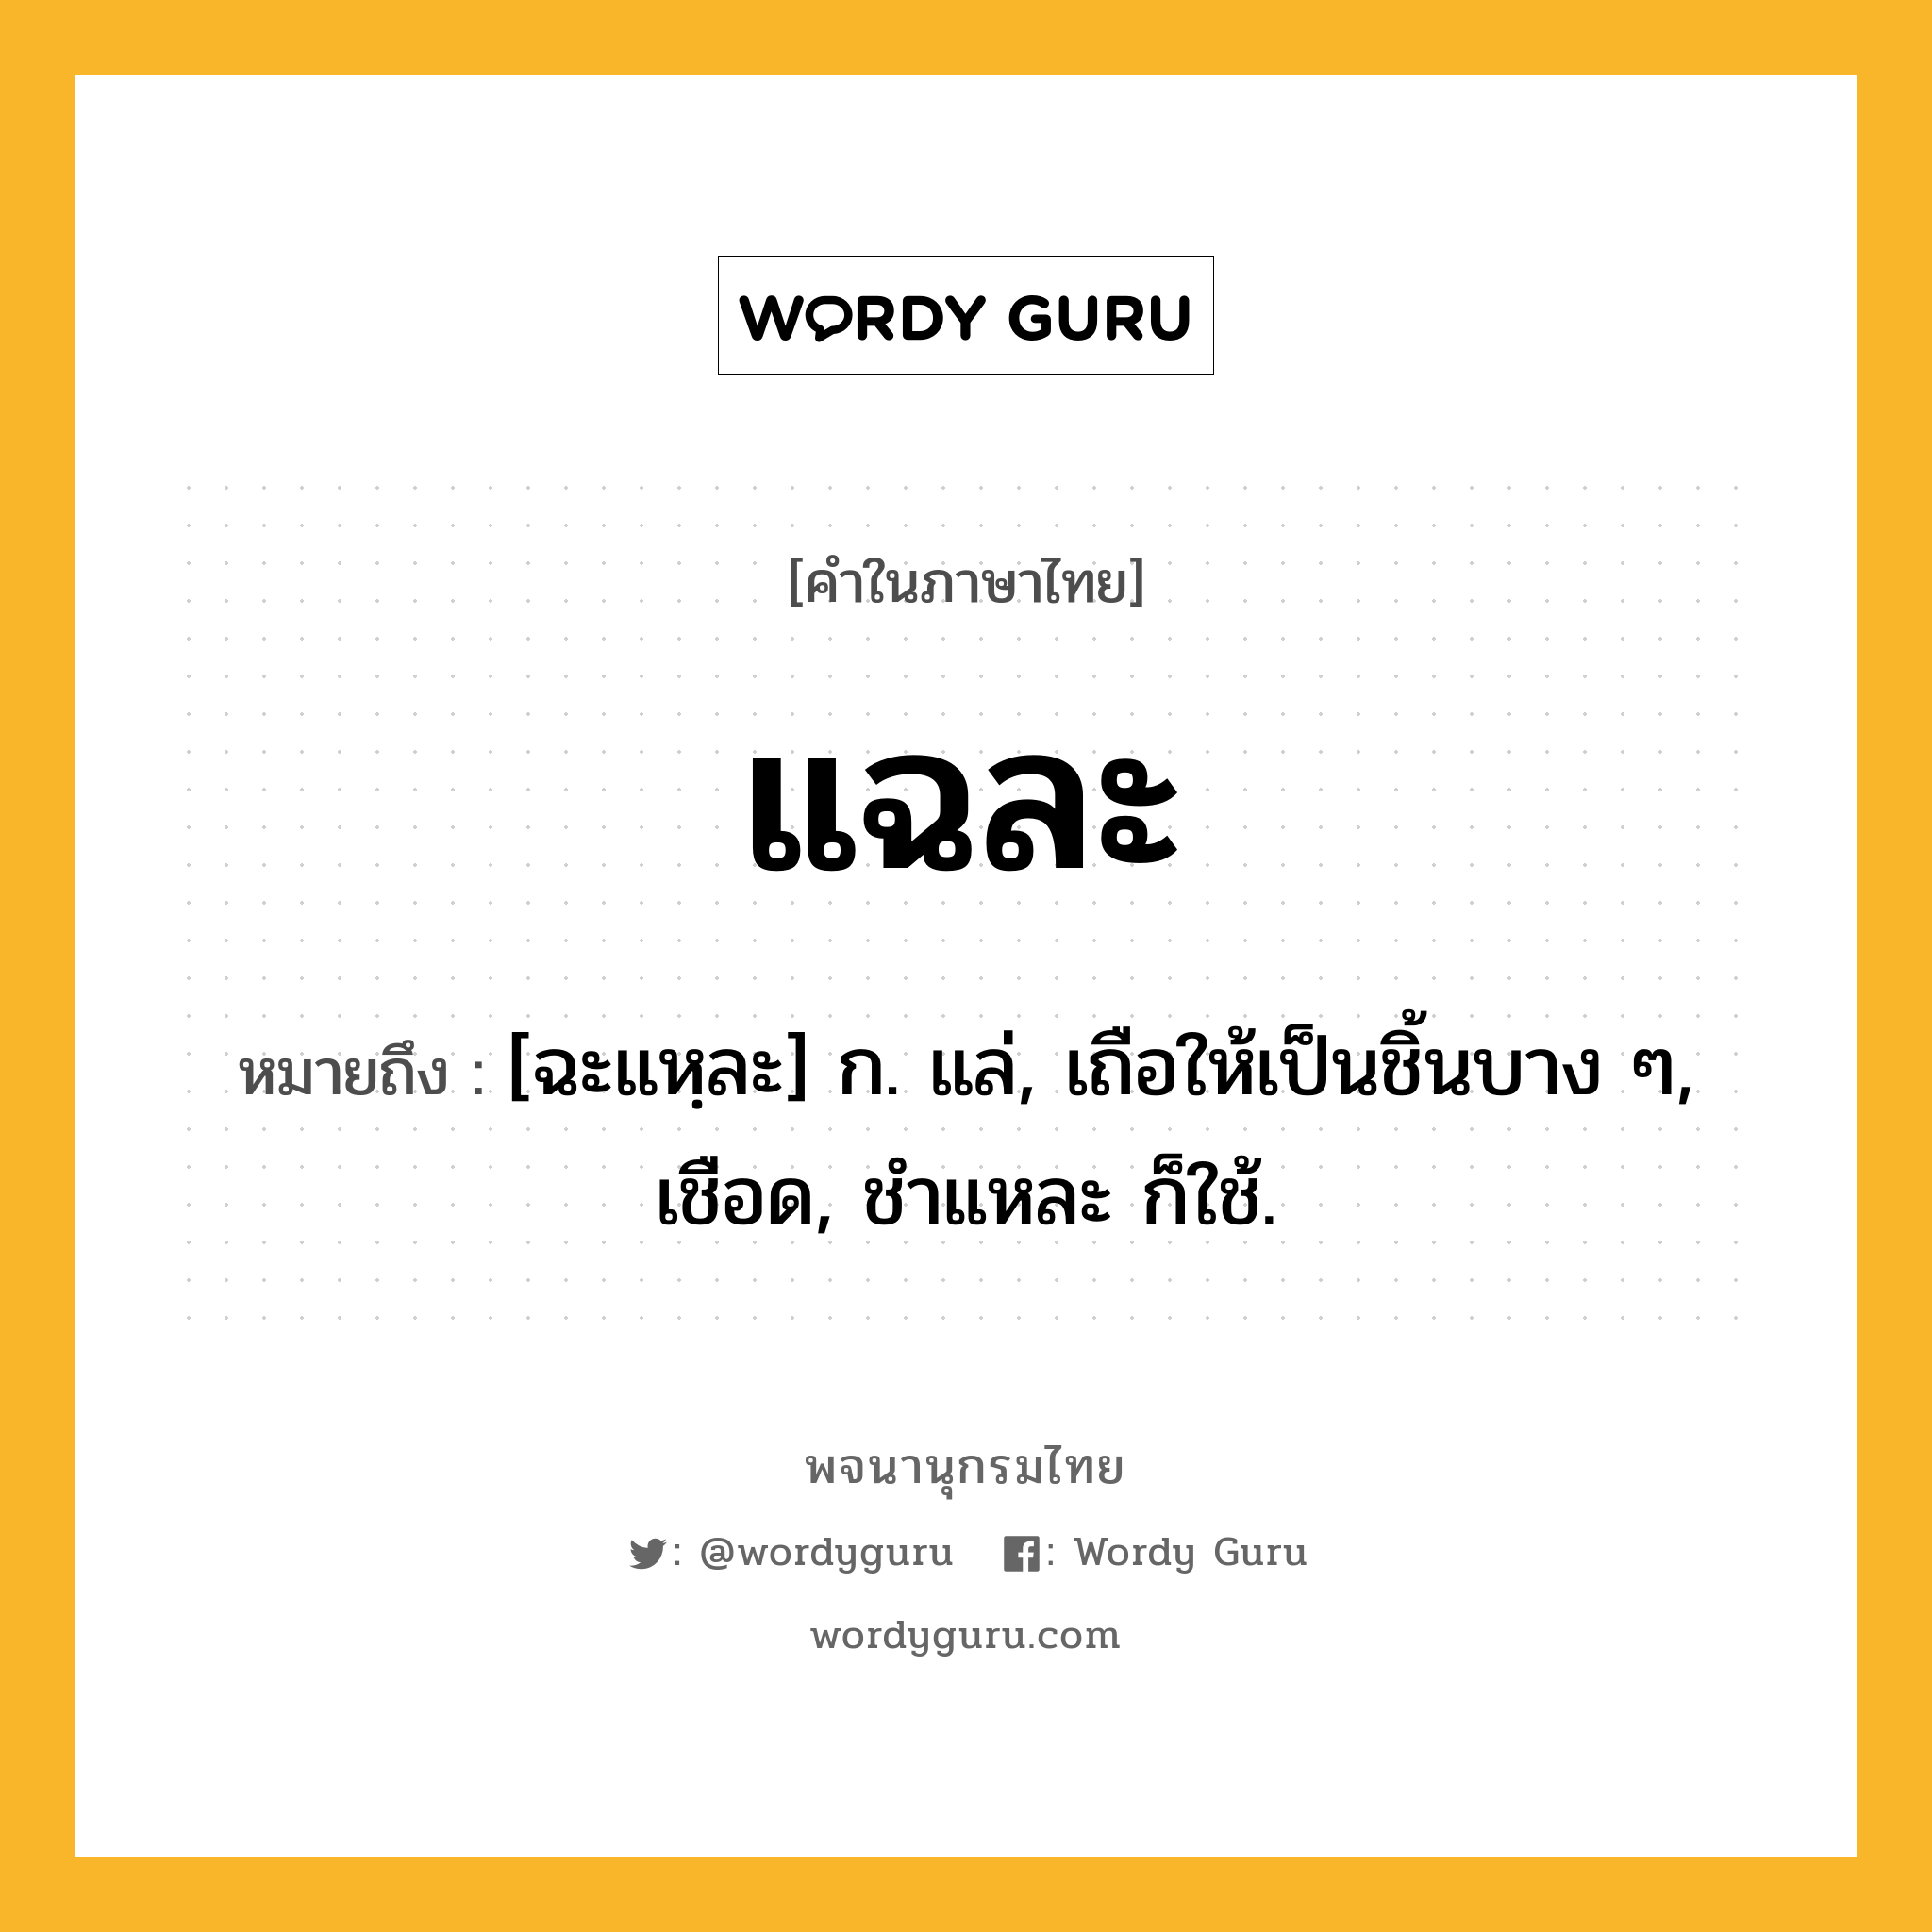 แฉละ หมายถึงอะไร?, คำในภาษาไทย แฉละ หมายถึง [ฉะแหฺละ] ก. แล่, เถือให้เป็นชิ้นบาง ๆ, เชือด, ชําแหละ ก็ใช้.